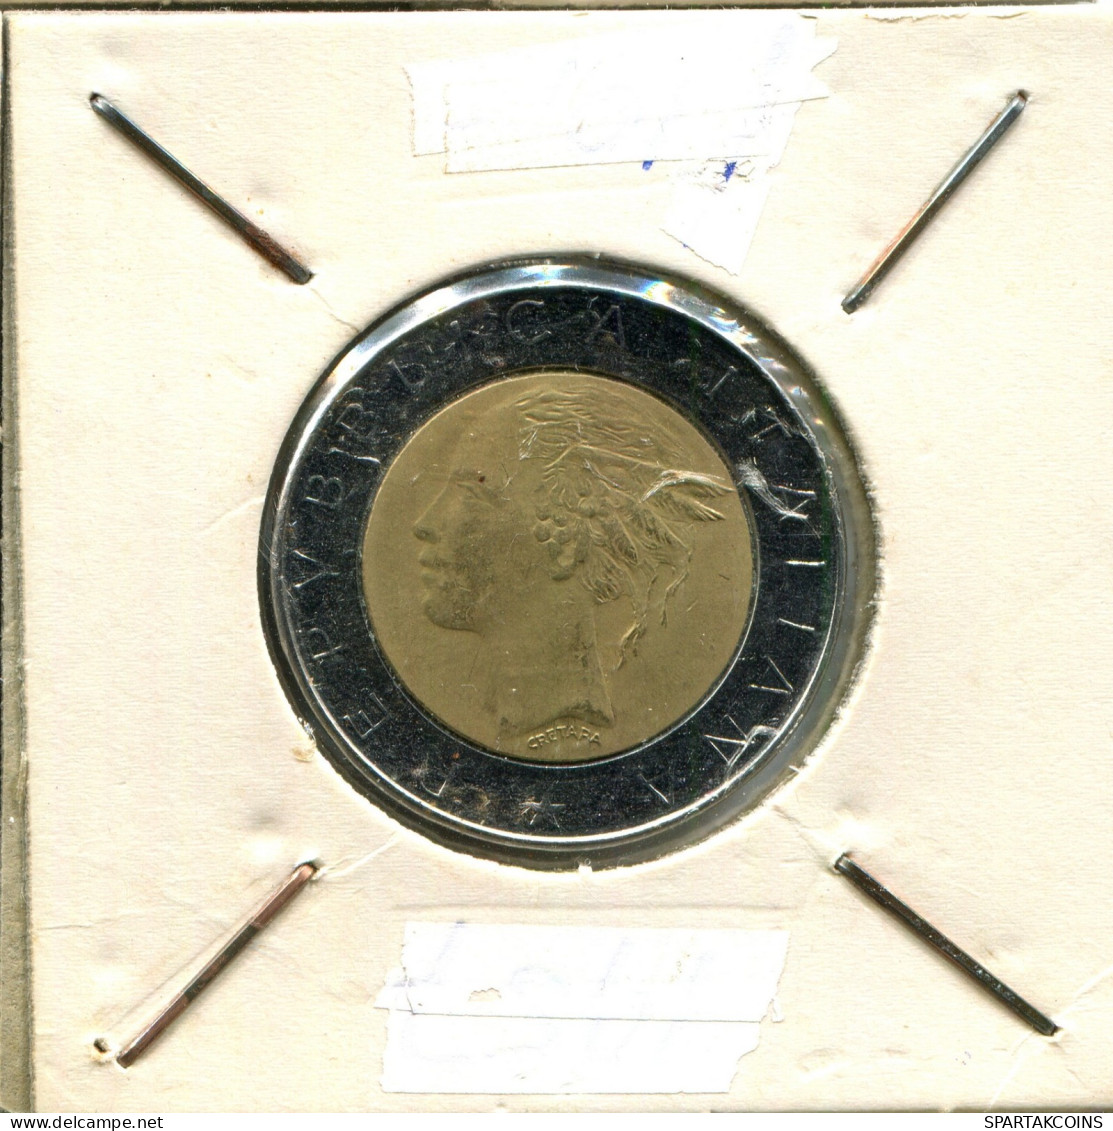 500 LIRE 1983 ITALIA ITALY Moneda BIMETALLIC #AW641.E.A - 500 Liras